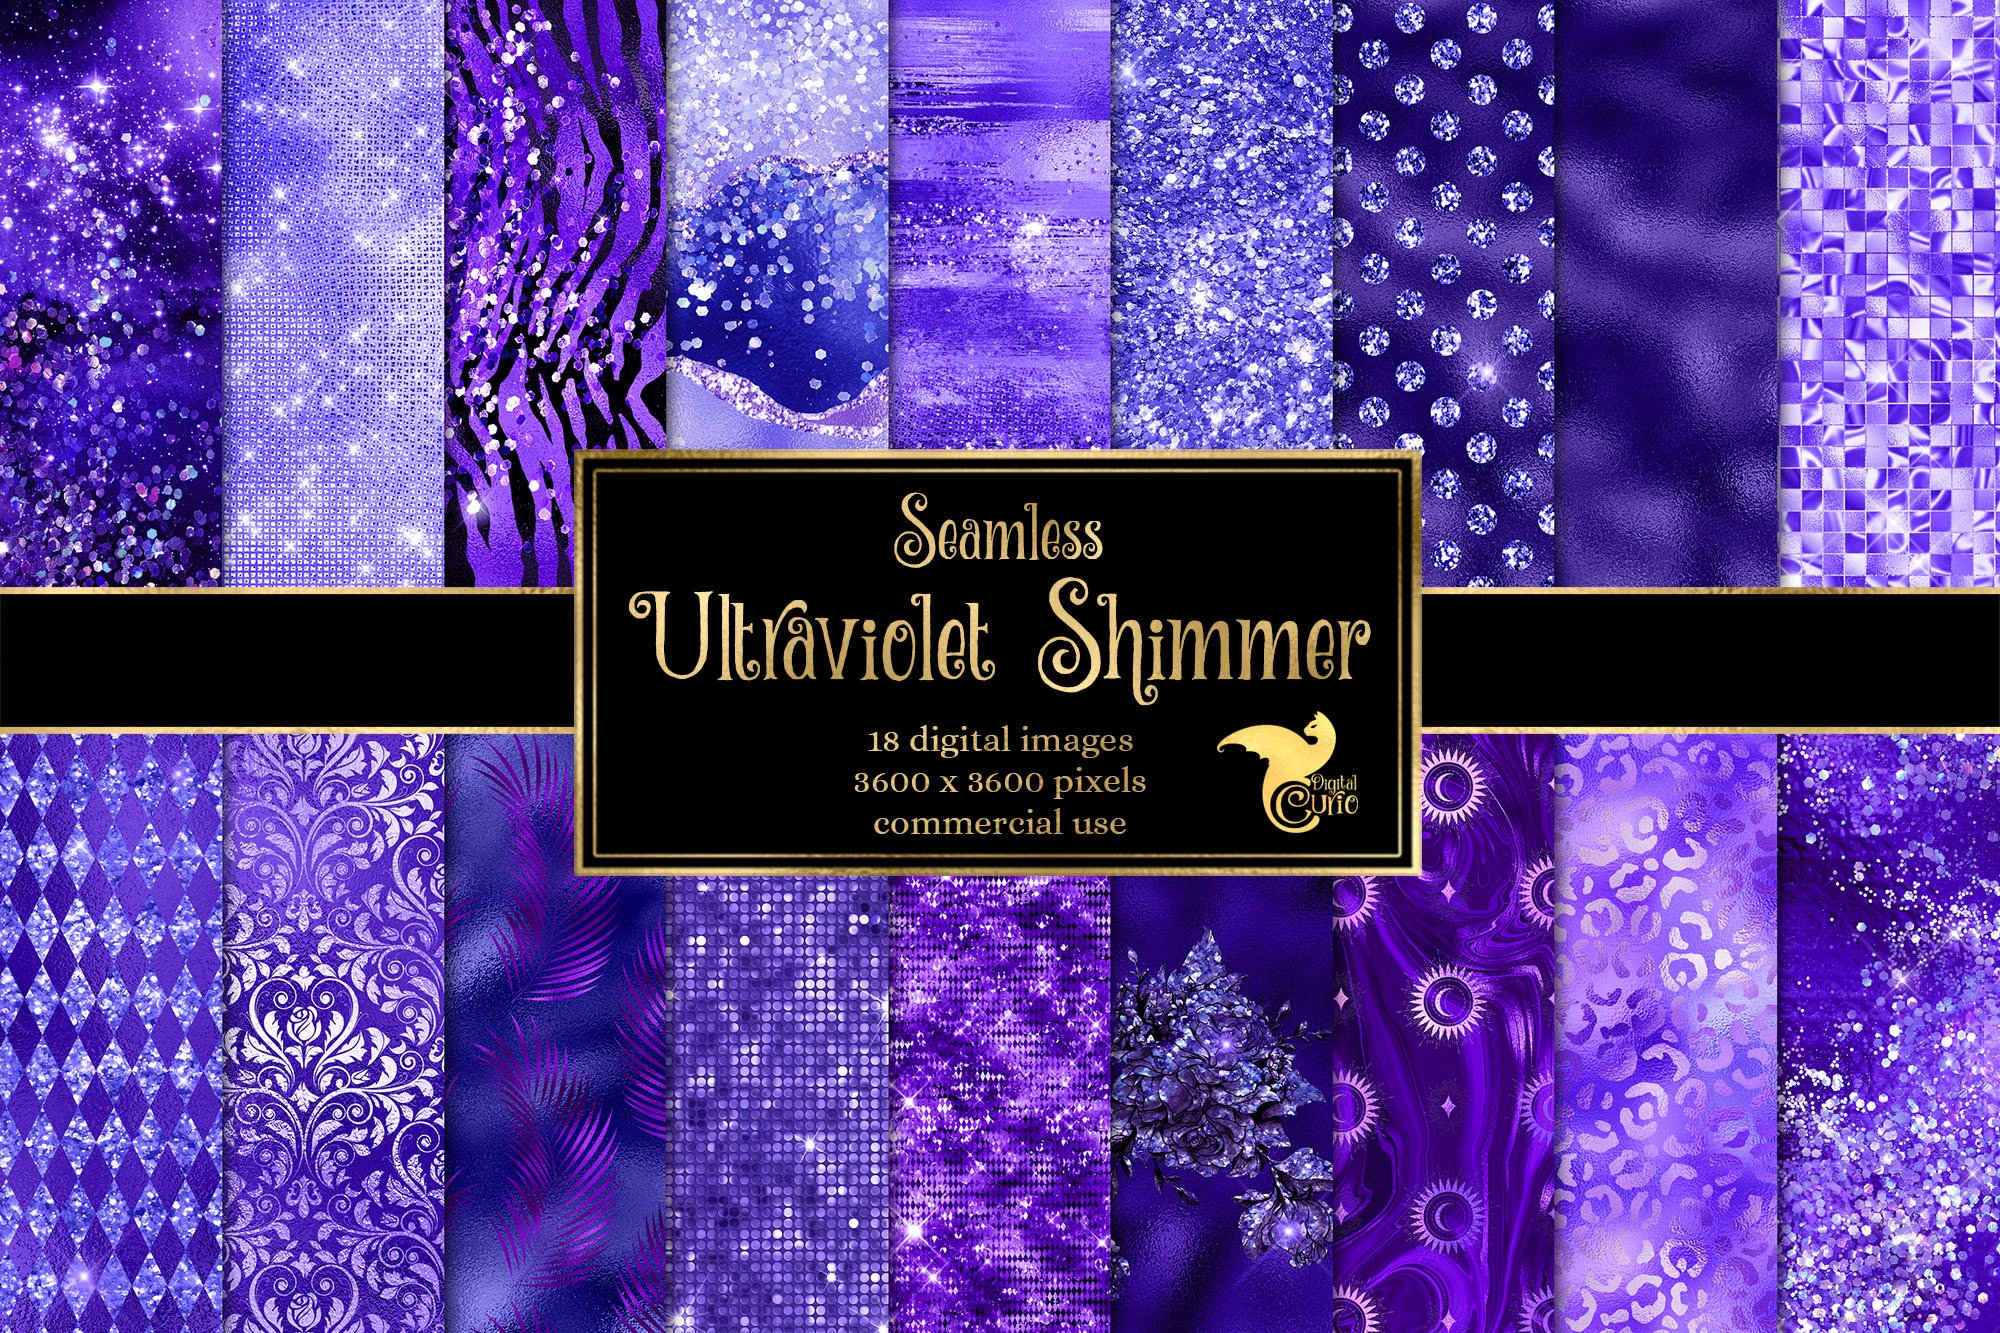 Ultraviolet Shimmer Digital Paper cover image.